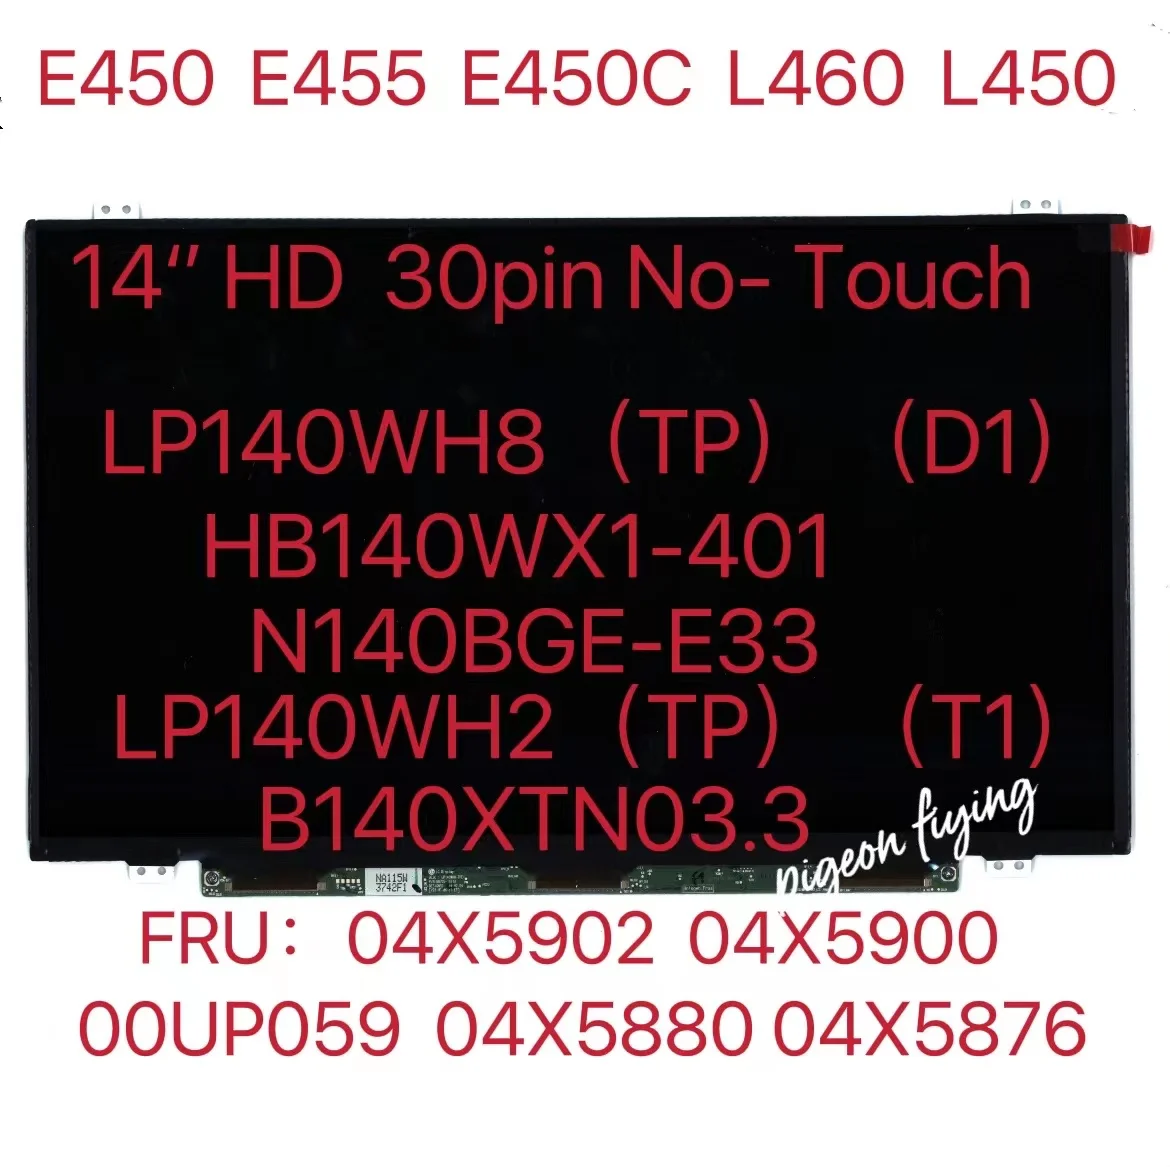 Thinkpad için L450 L460 E450 E450C E455 LCD Ekran LP140WH8 Olmayan Dokunmatik 30 Pin FRU 04X5902 04X5900 00UP059 04X5880 04X5876 04X0379